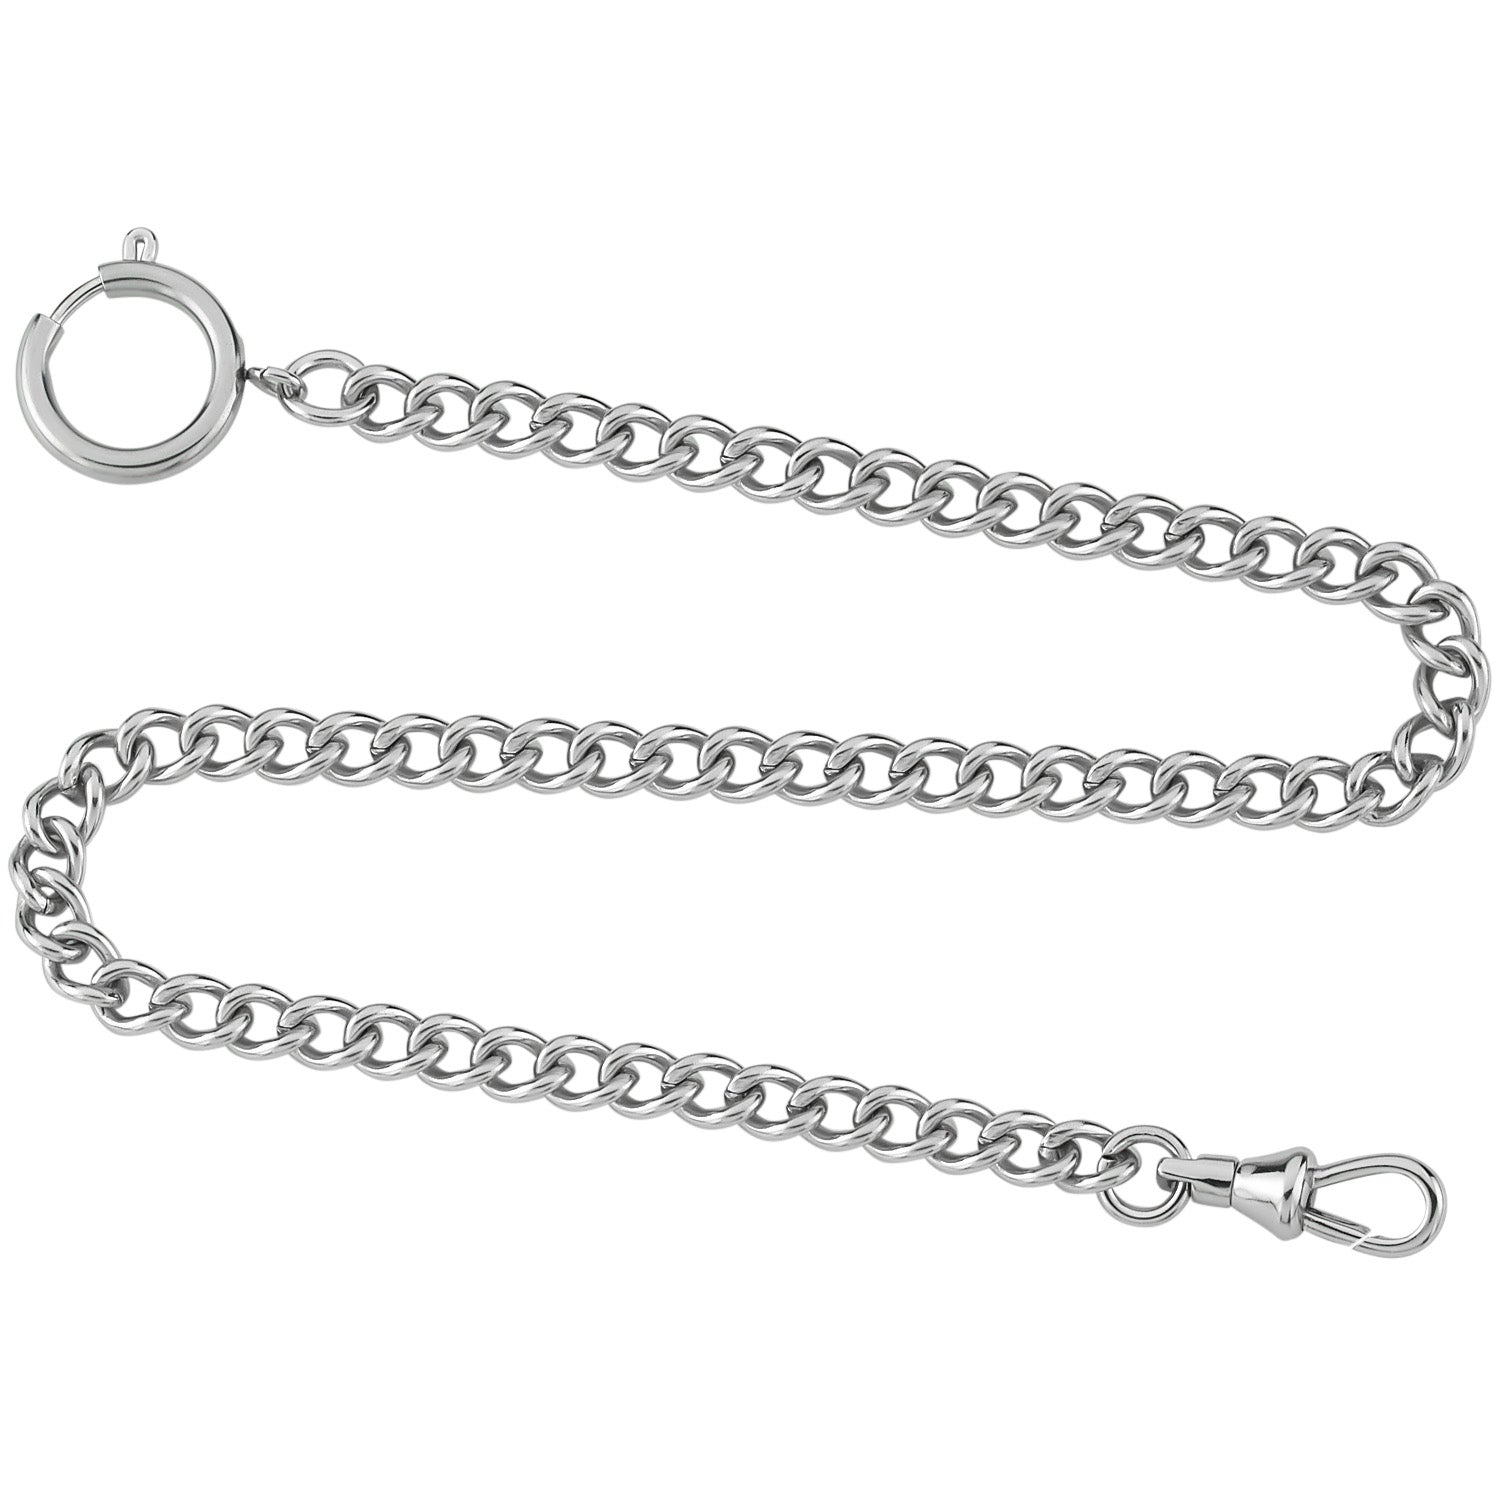 Gotham Silver-Tone Pocket Watch Chain Fob Curb Link 14 inch #Gwcstlchain, Men's, Size: One Size